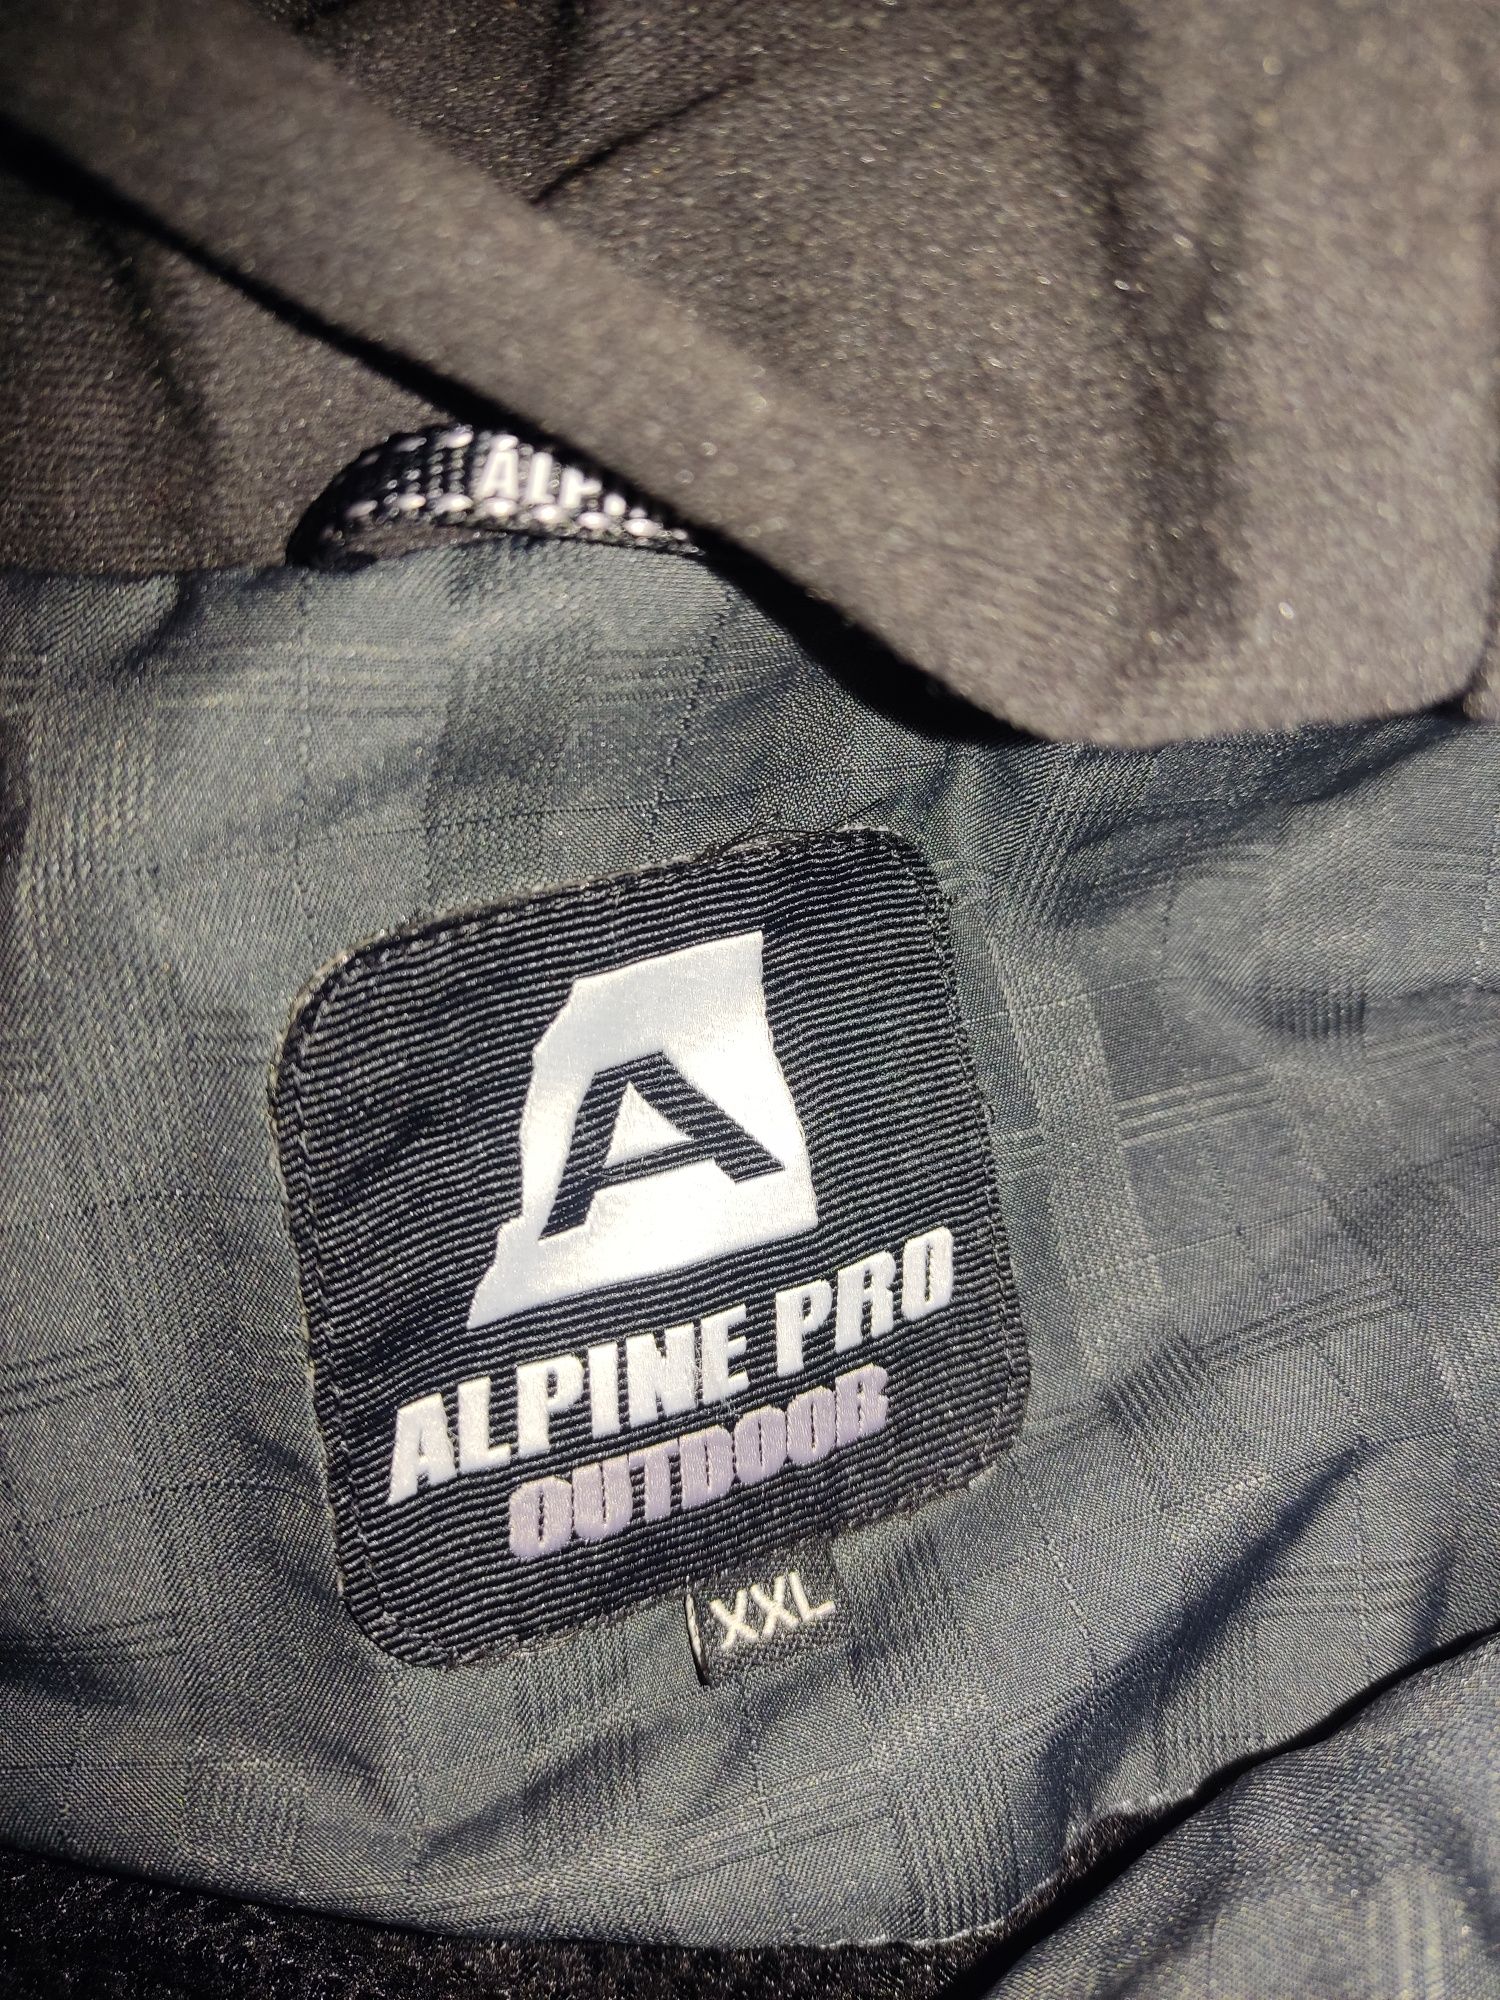 Продается анорак Alpine pro 54р.